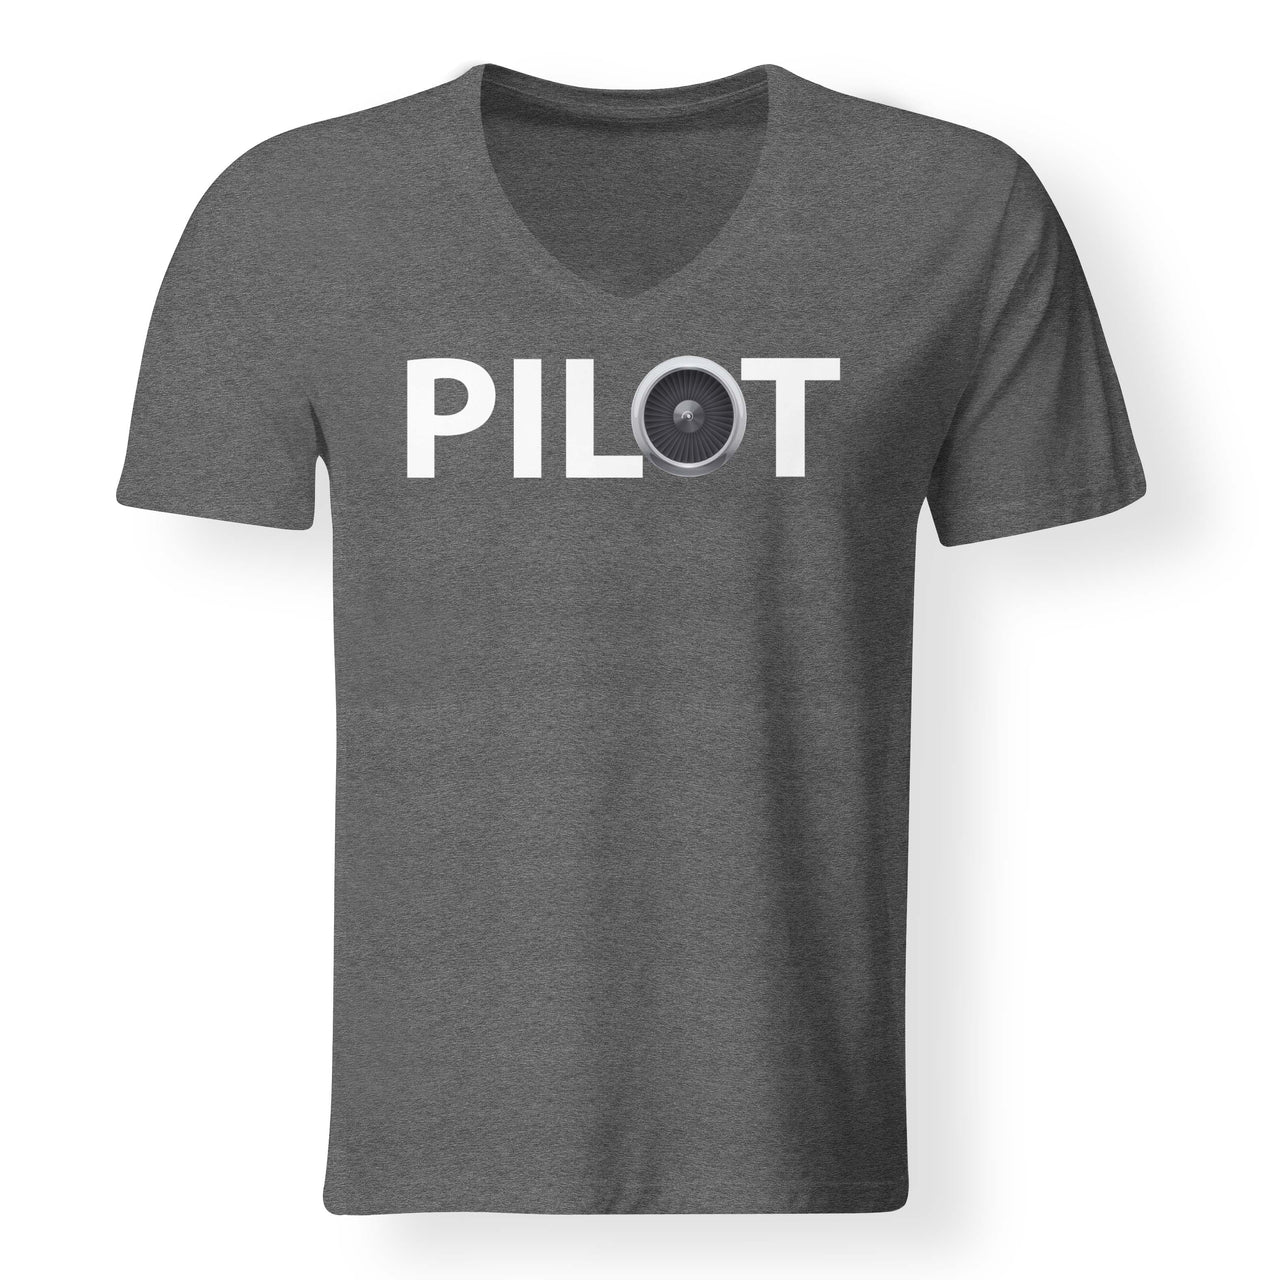 Pilot & Jet Engine Designed V-Neck T-Shirts